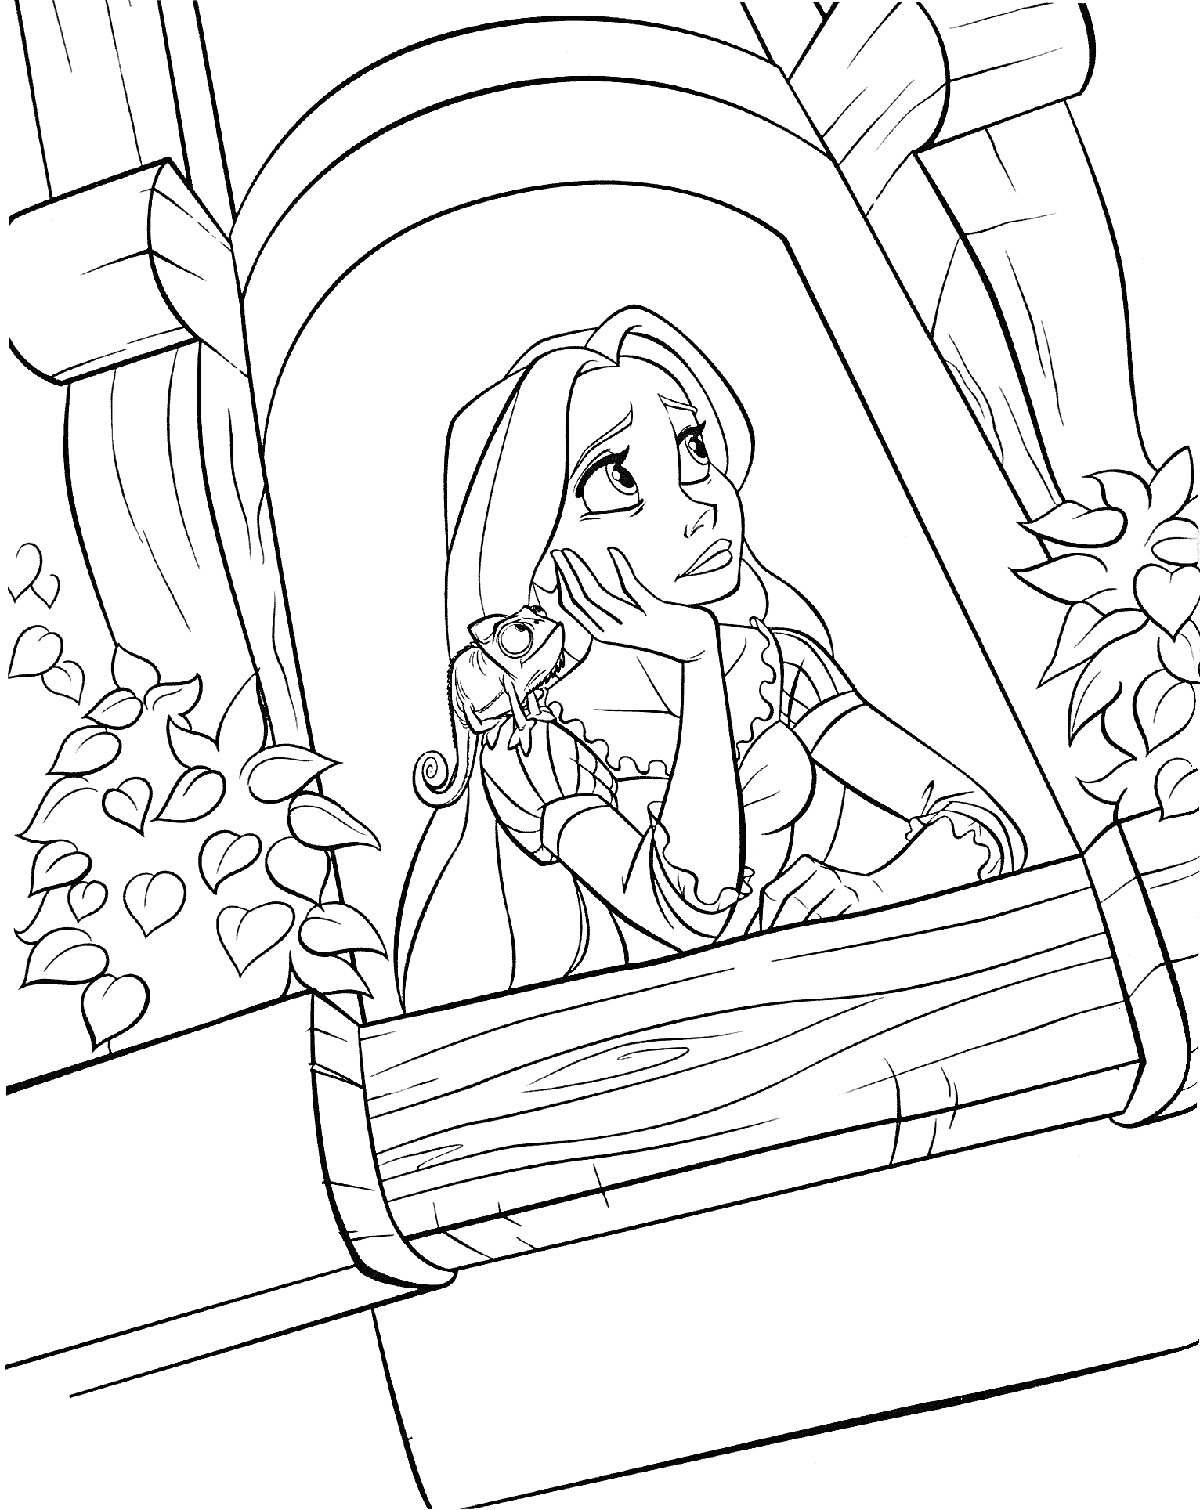 Девочка с длинными волосами на балконе с ящерицей и растениями